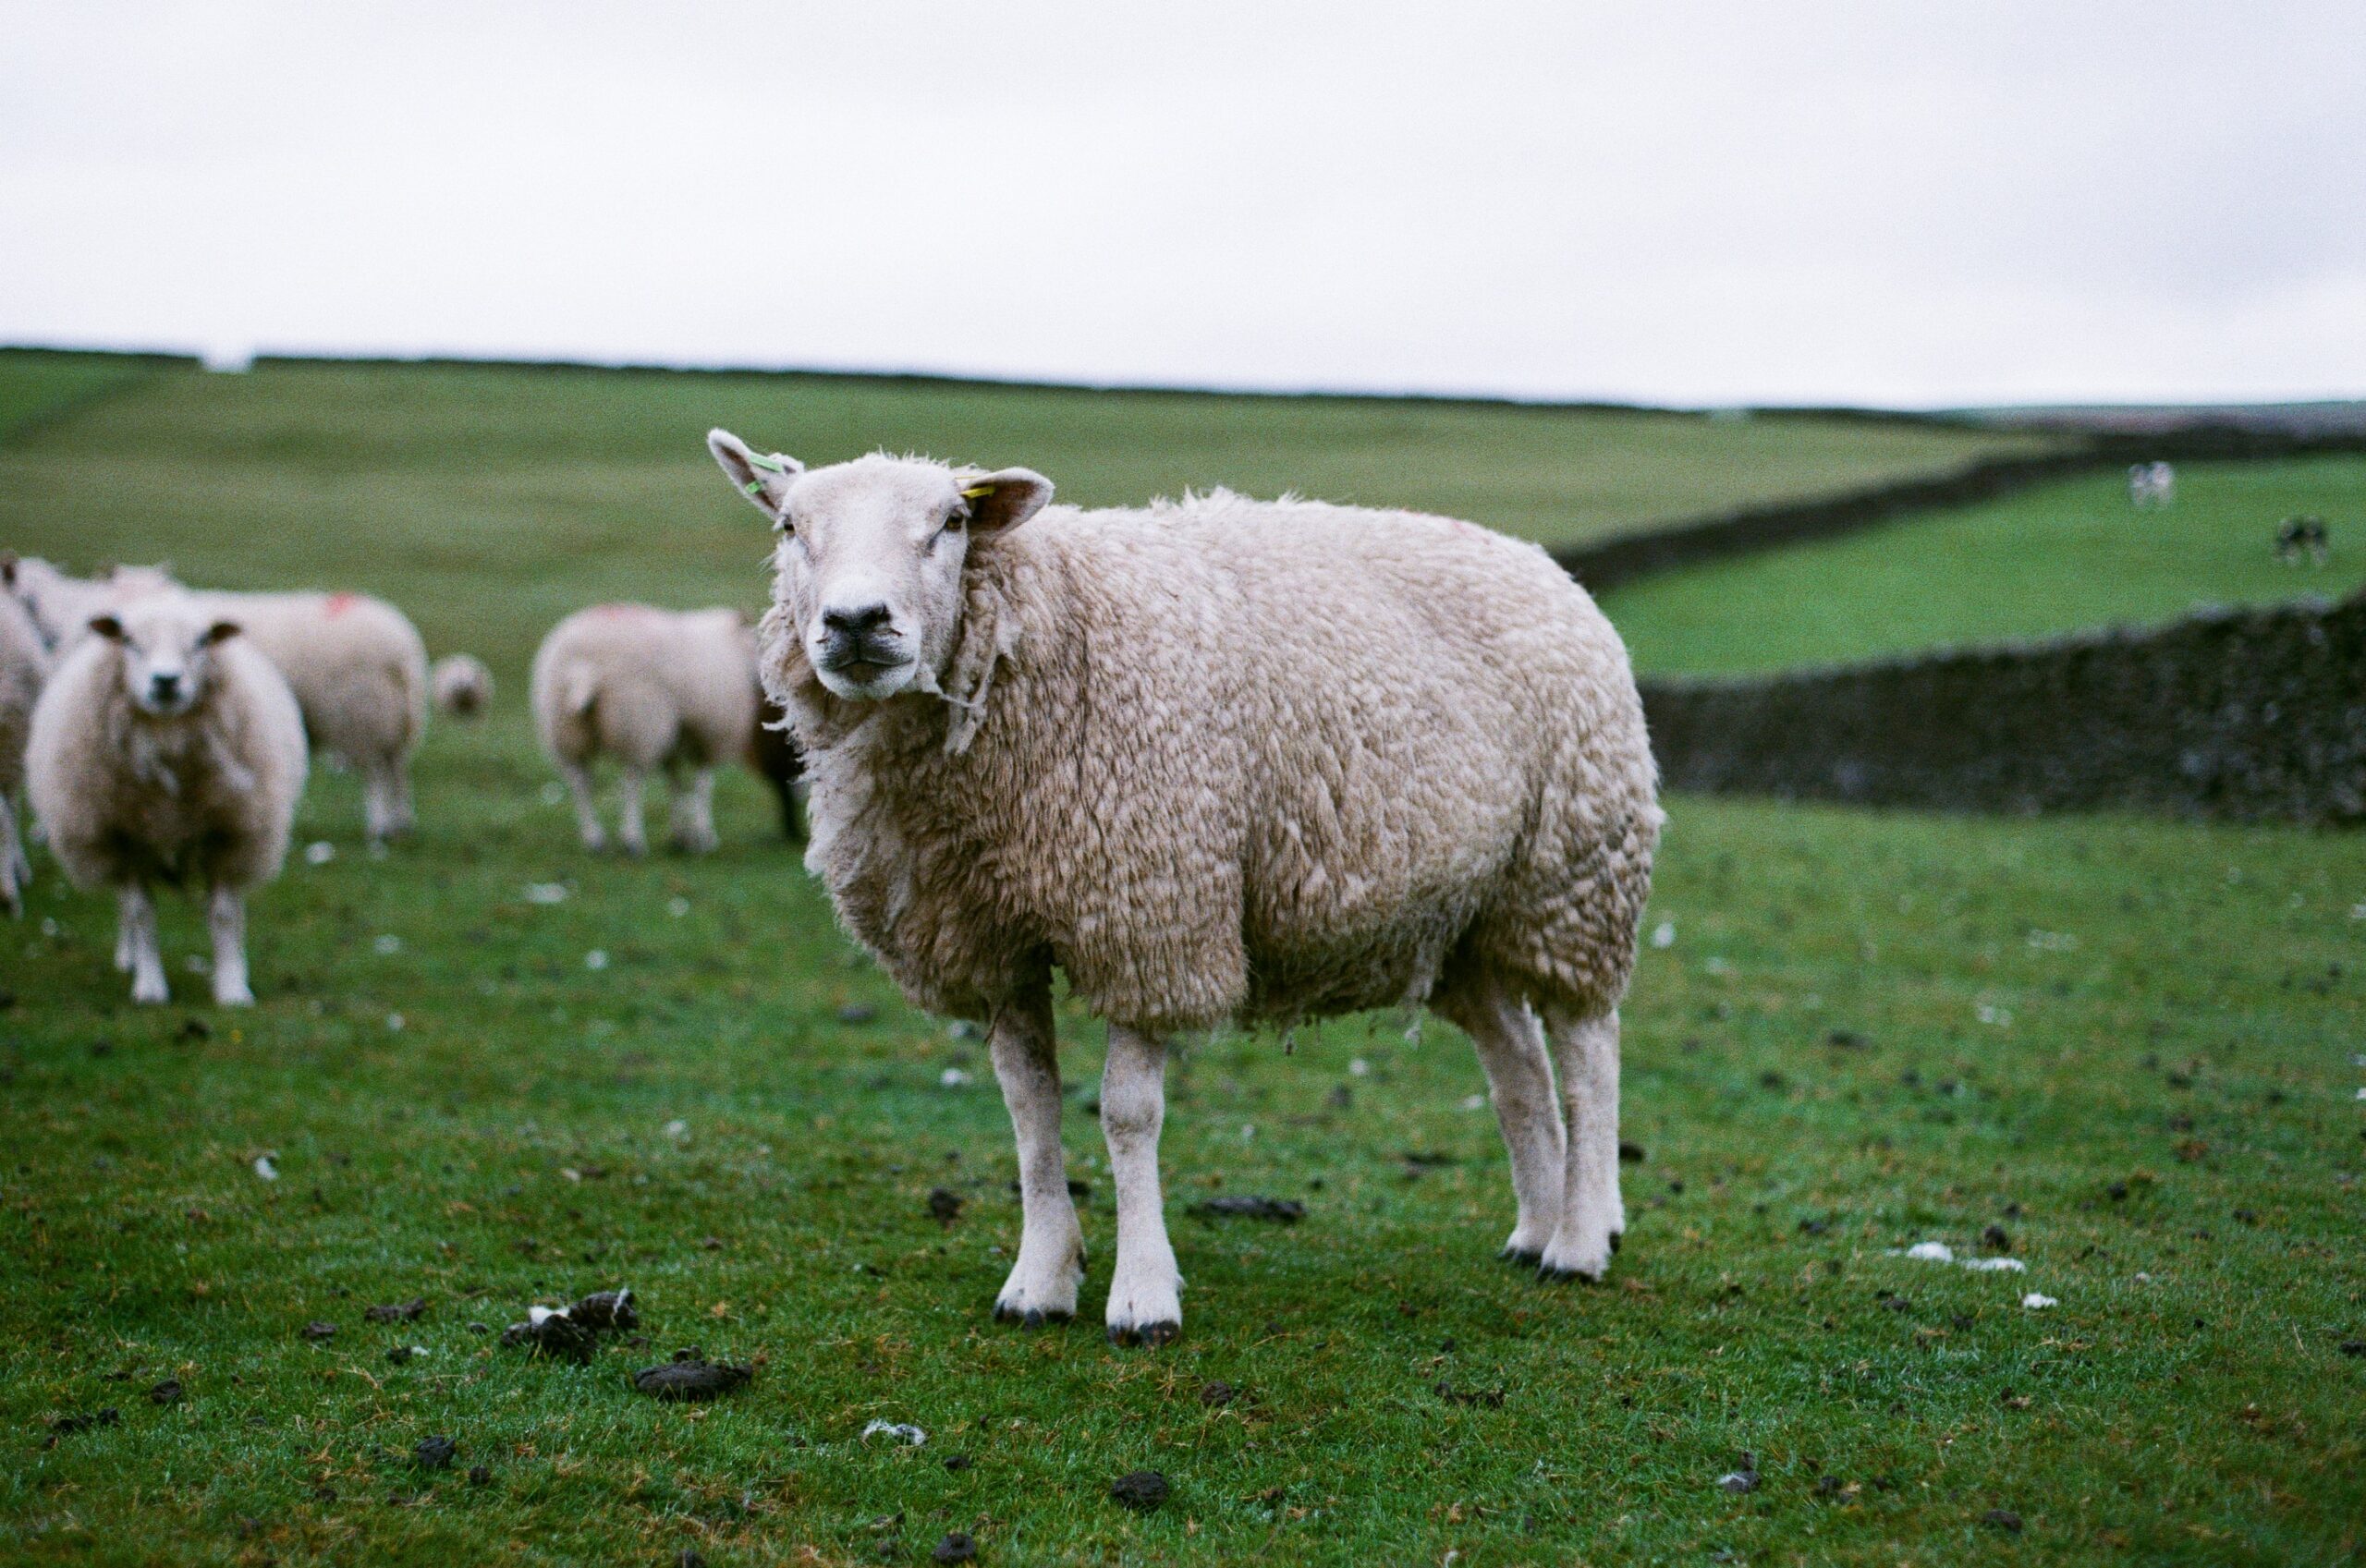 sheep in a grasst field #bettersleep